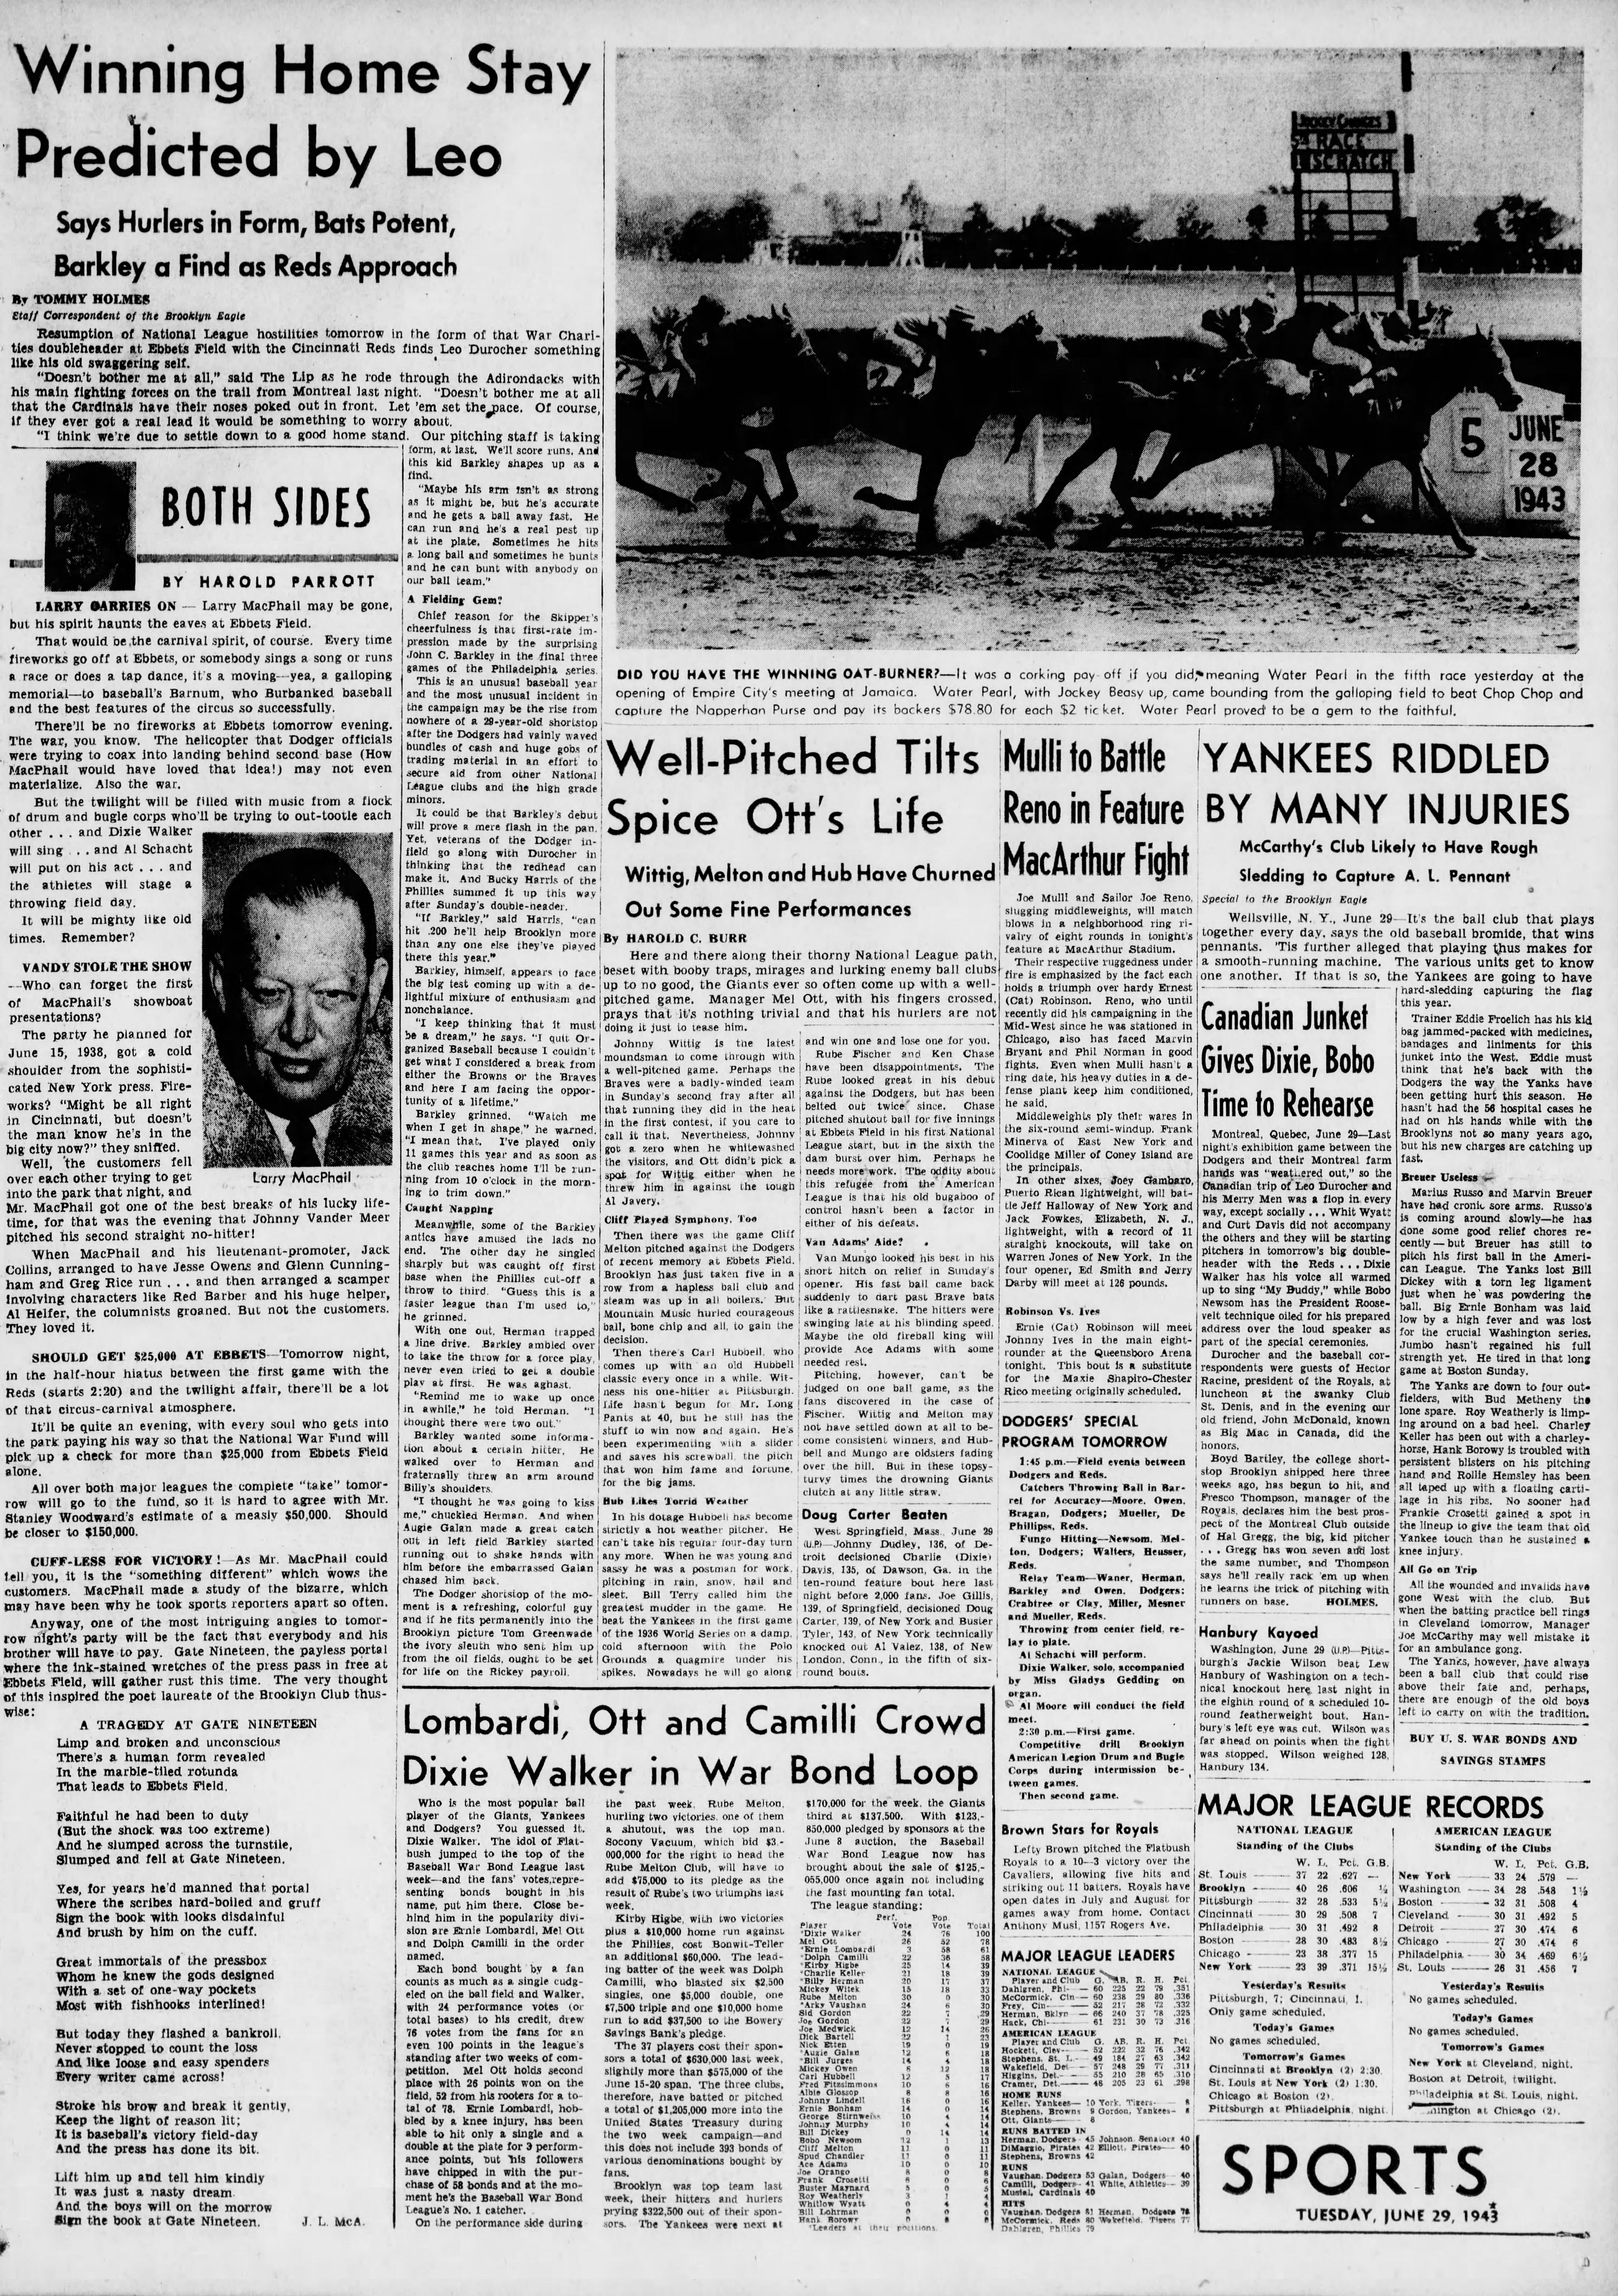 The_Brooklyn_Daily_Eagle_Tue__Jun_29__1943_(5).jpg